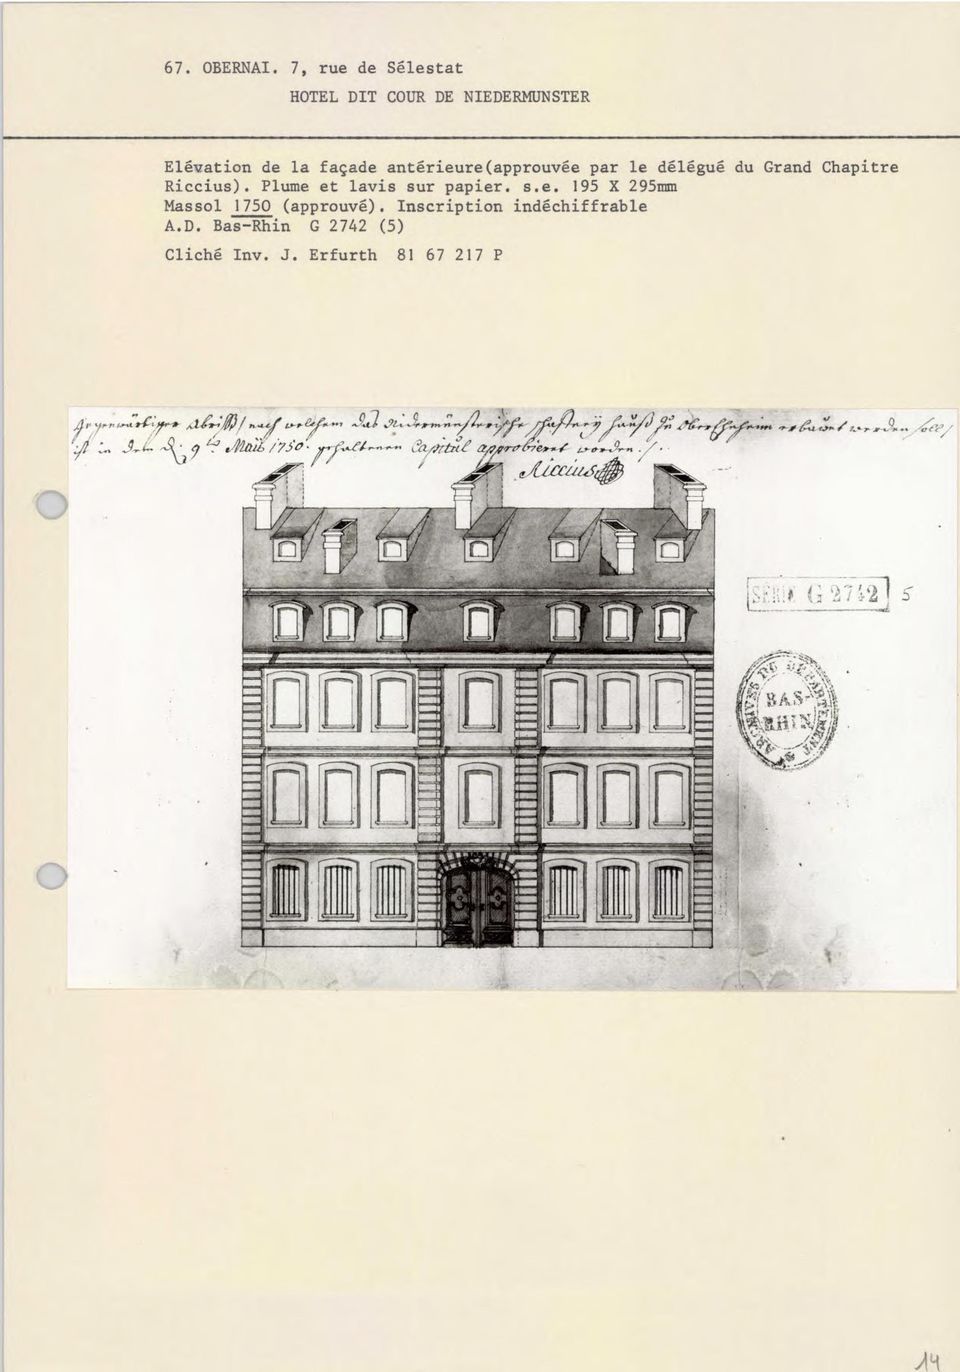 délégué du Grand Chapitre Riccius). Plume et lavis sur papier, s.e. 195 X 295mm Massol 1750 (approuvé).